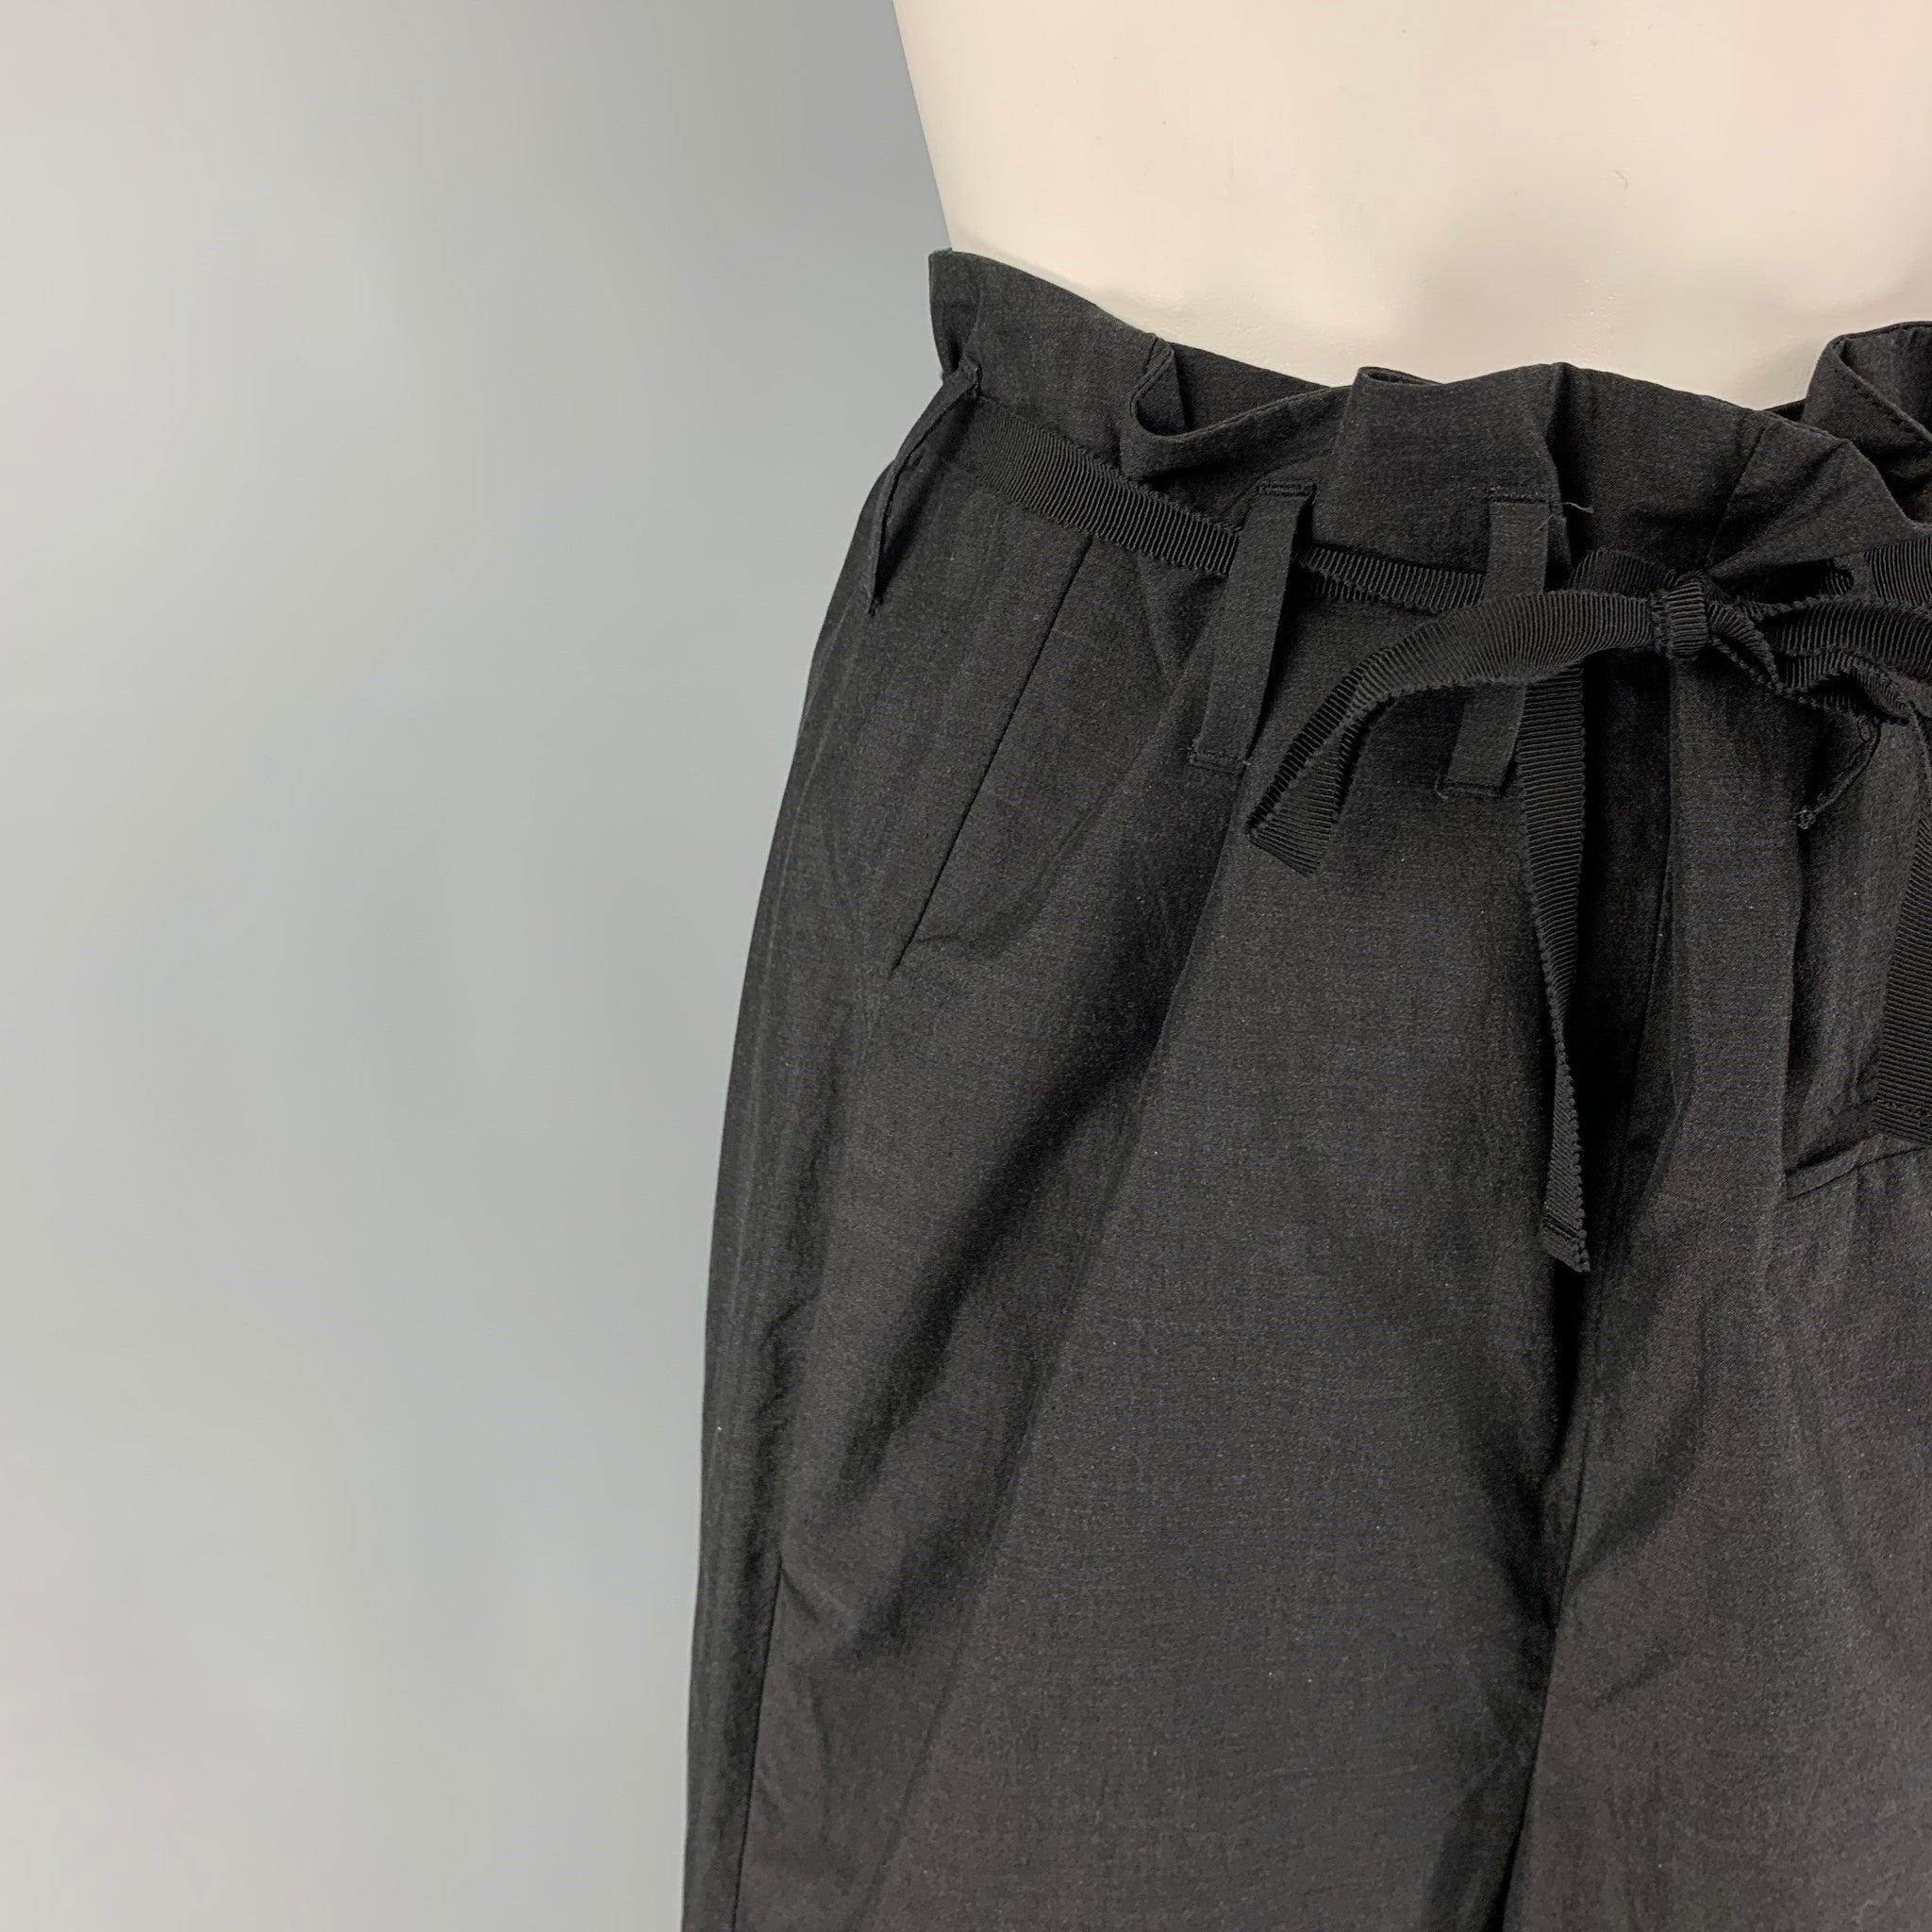 Die MARNI Hose ist aus schwarzer Baumwolle gefertigt und hat eine hohe Taille, einen gerafften Bund, einen Gürtel mit Schleife und einen Knopfverschluss. Hergestellt in Italien.
Ausgezeichnet
Gebrauchtes Zustand. 

Markiert:   40 

Abmessungen: 
 